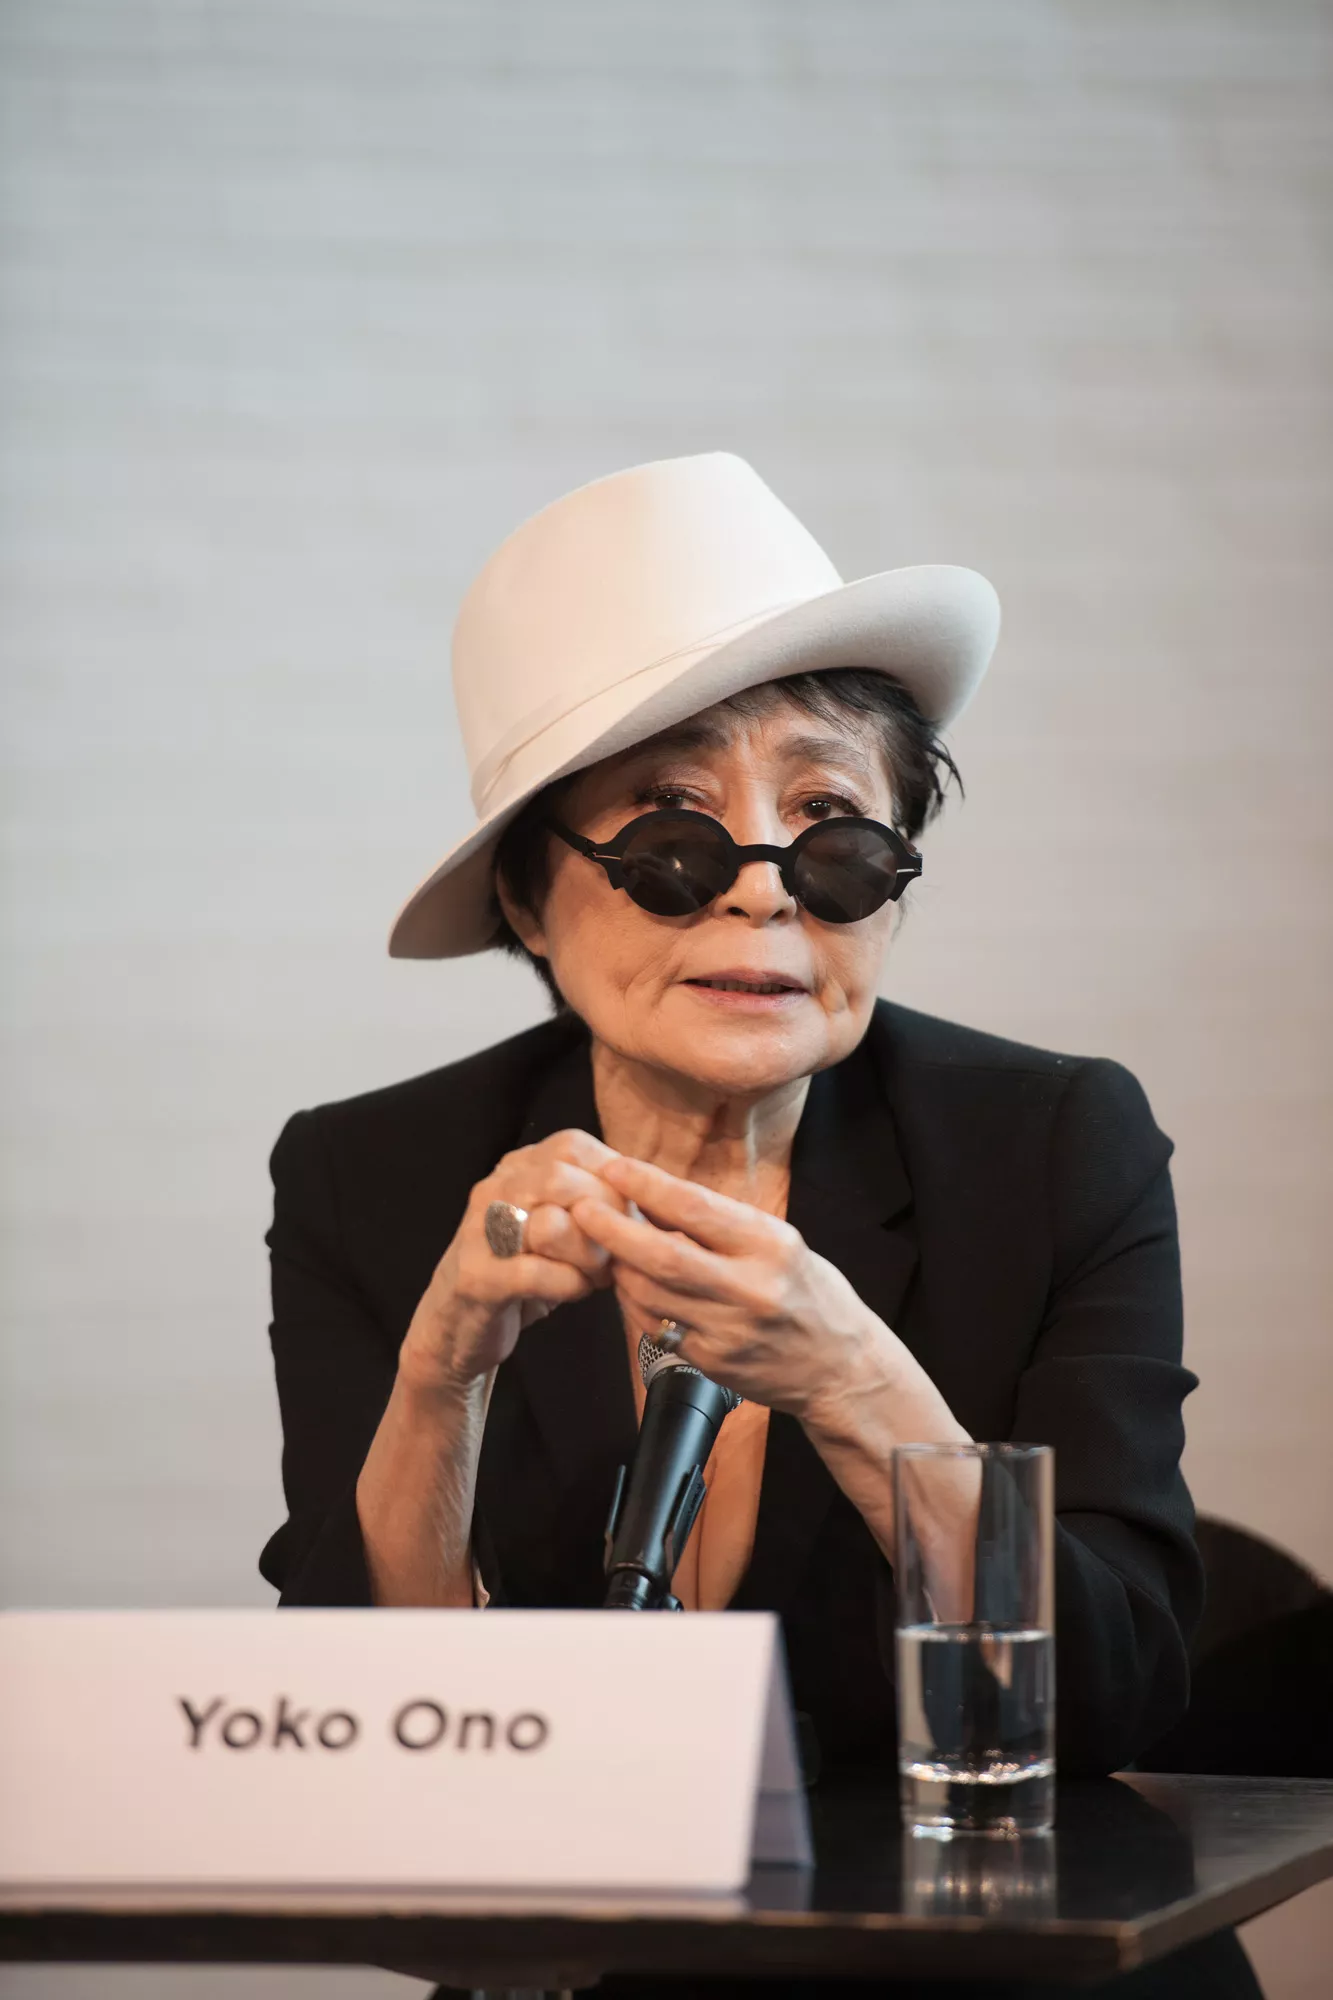 Yoko Ono truer læskedrik til at ændre navn efter krænkelse af Lennon-navnet